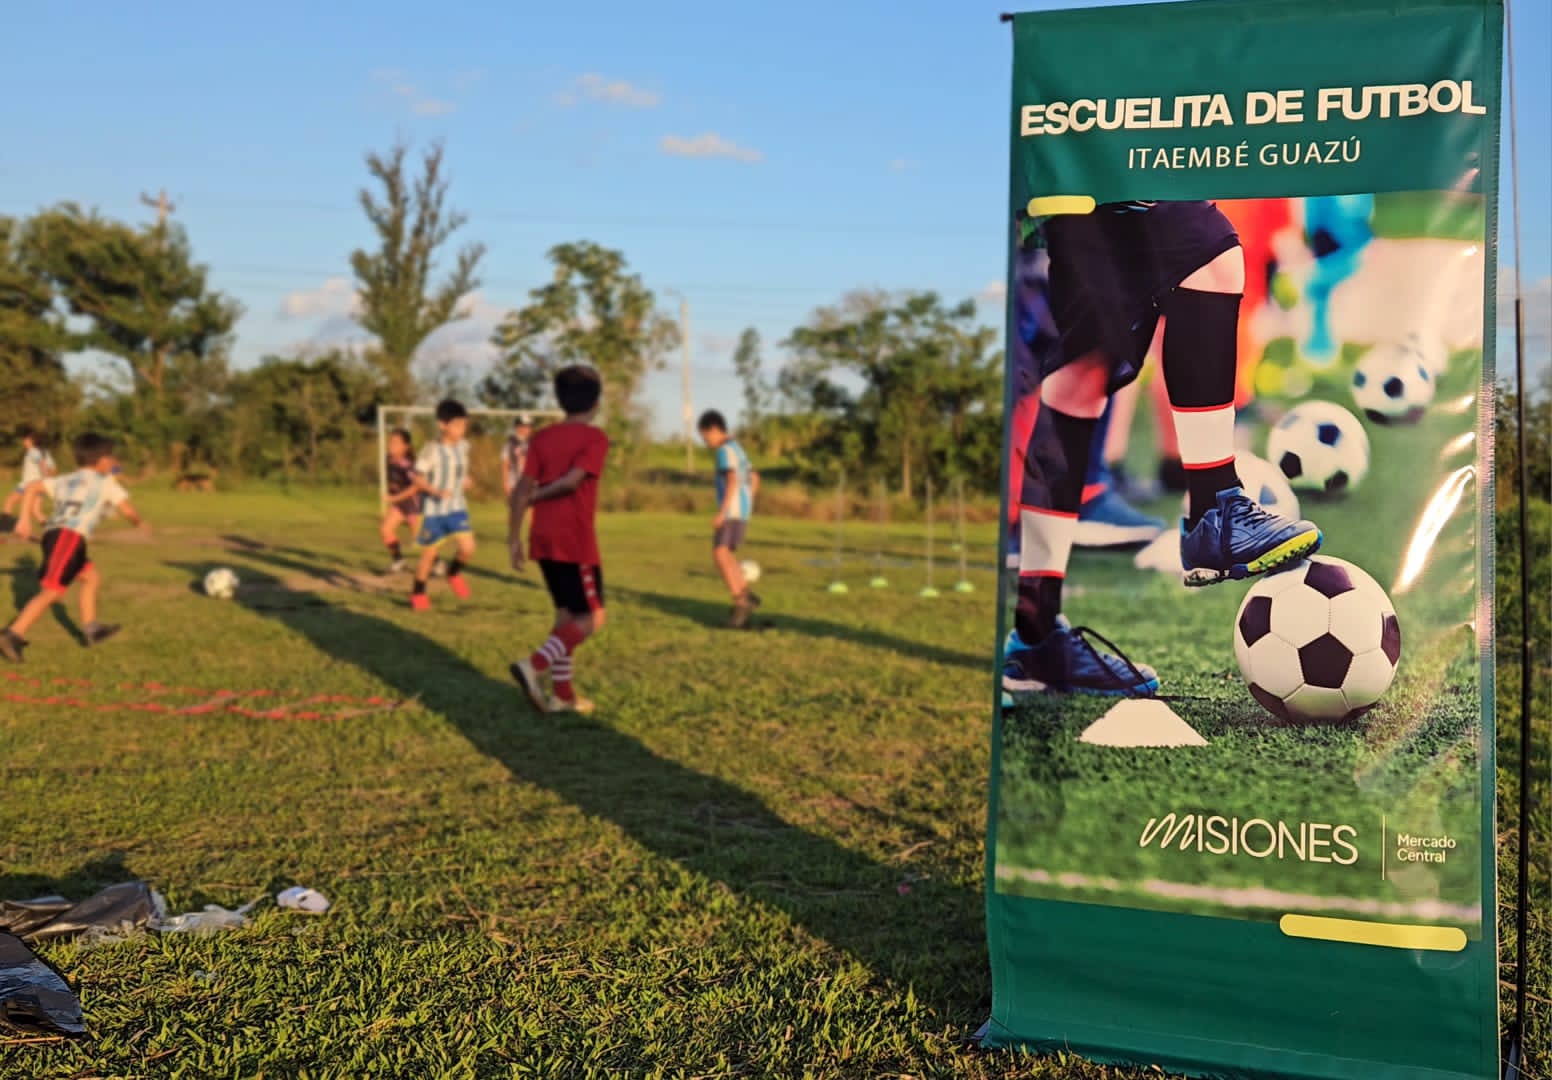 Comunidad de Itaembé Guazú destaca la puesta en funcionamiento de la Escuelita de Fútbol del Mercado Central imagen-32